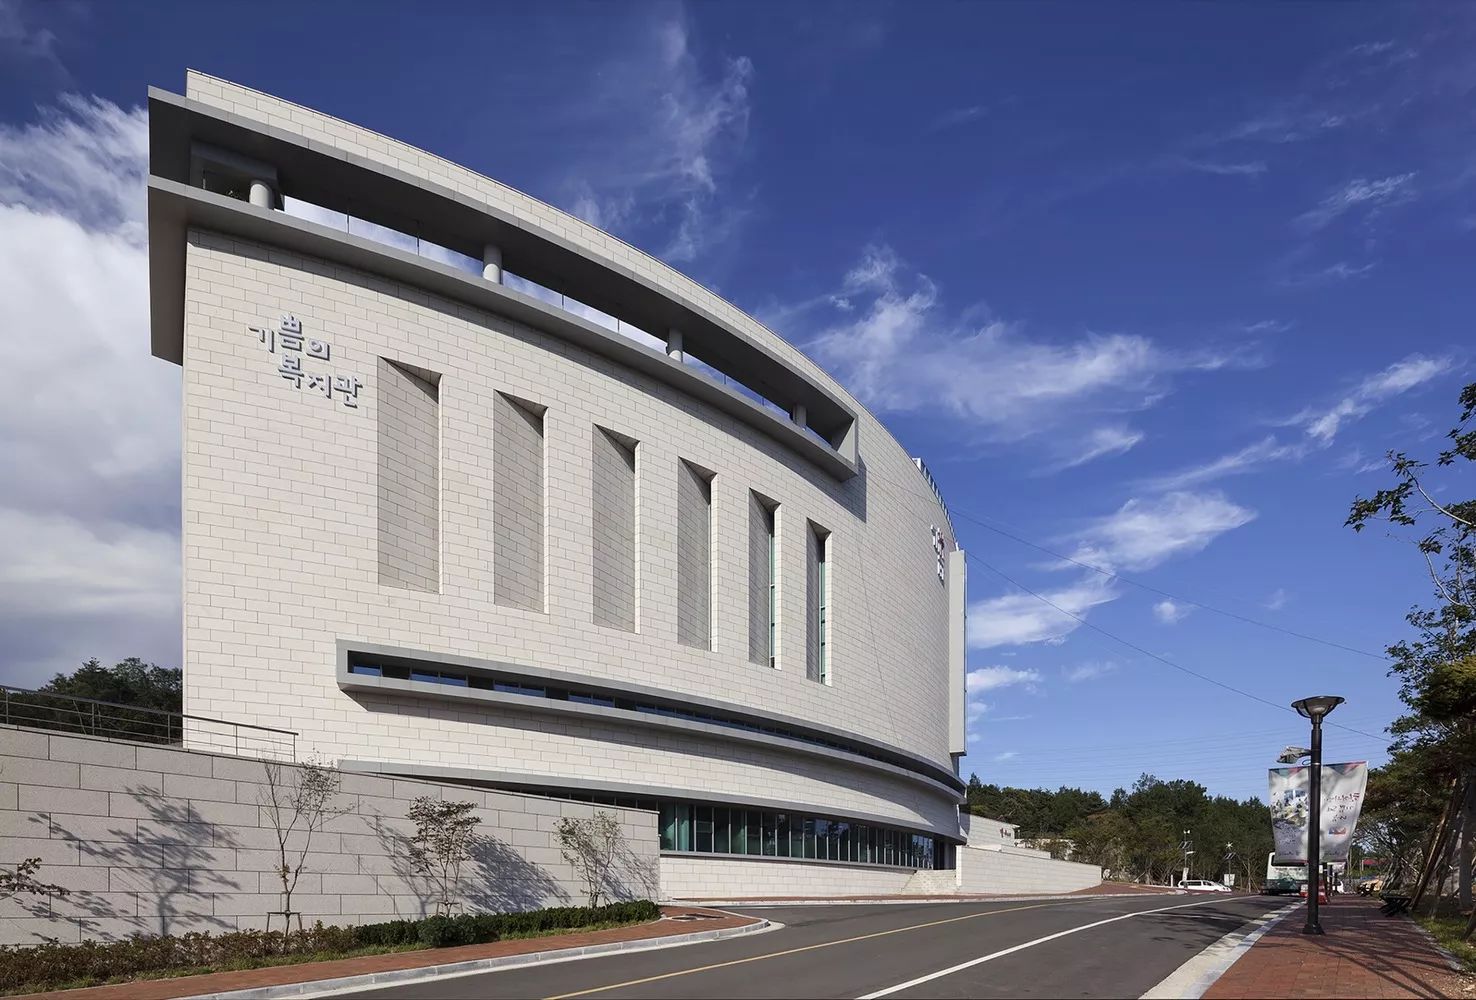 【案例赏析】融合建筑,信仰和文化于一体,韩国浦项市欢乐教堂